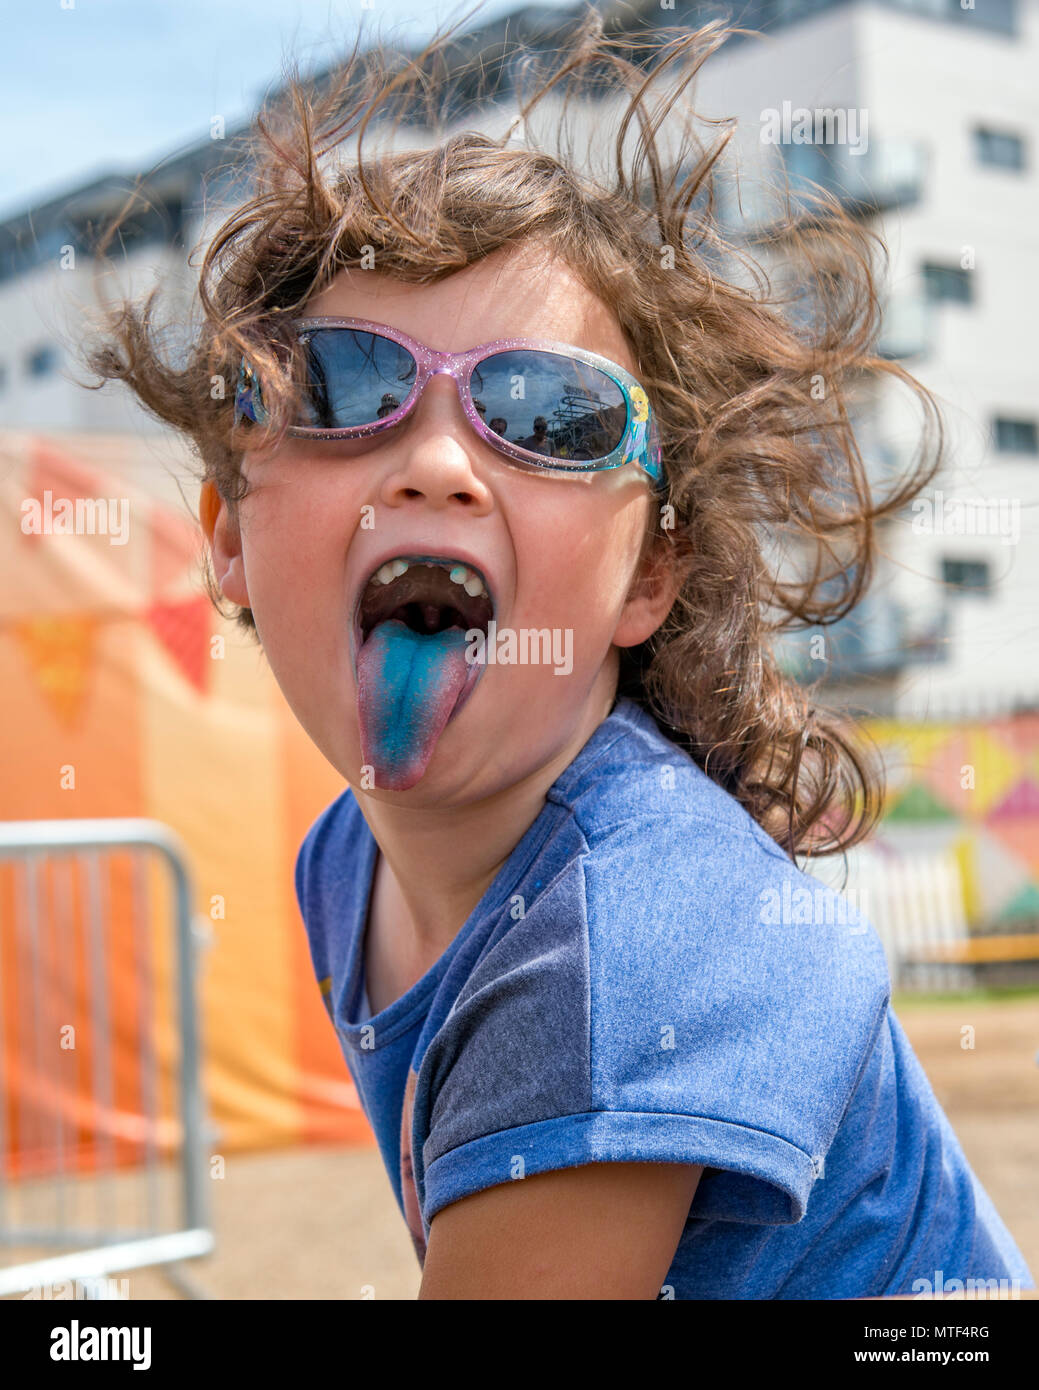 Cheeky giovane ragazza prendendo la sua linguetta blu colorata da un ghiaccio per lecca-lecca Foto Stock